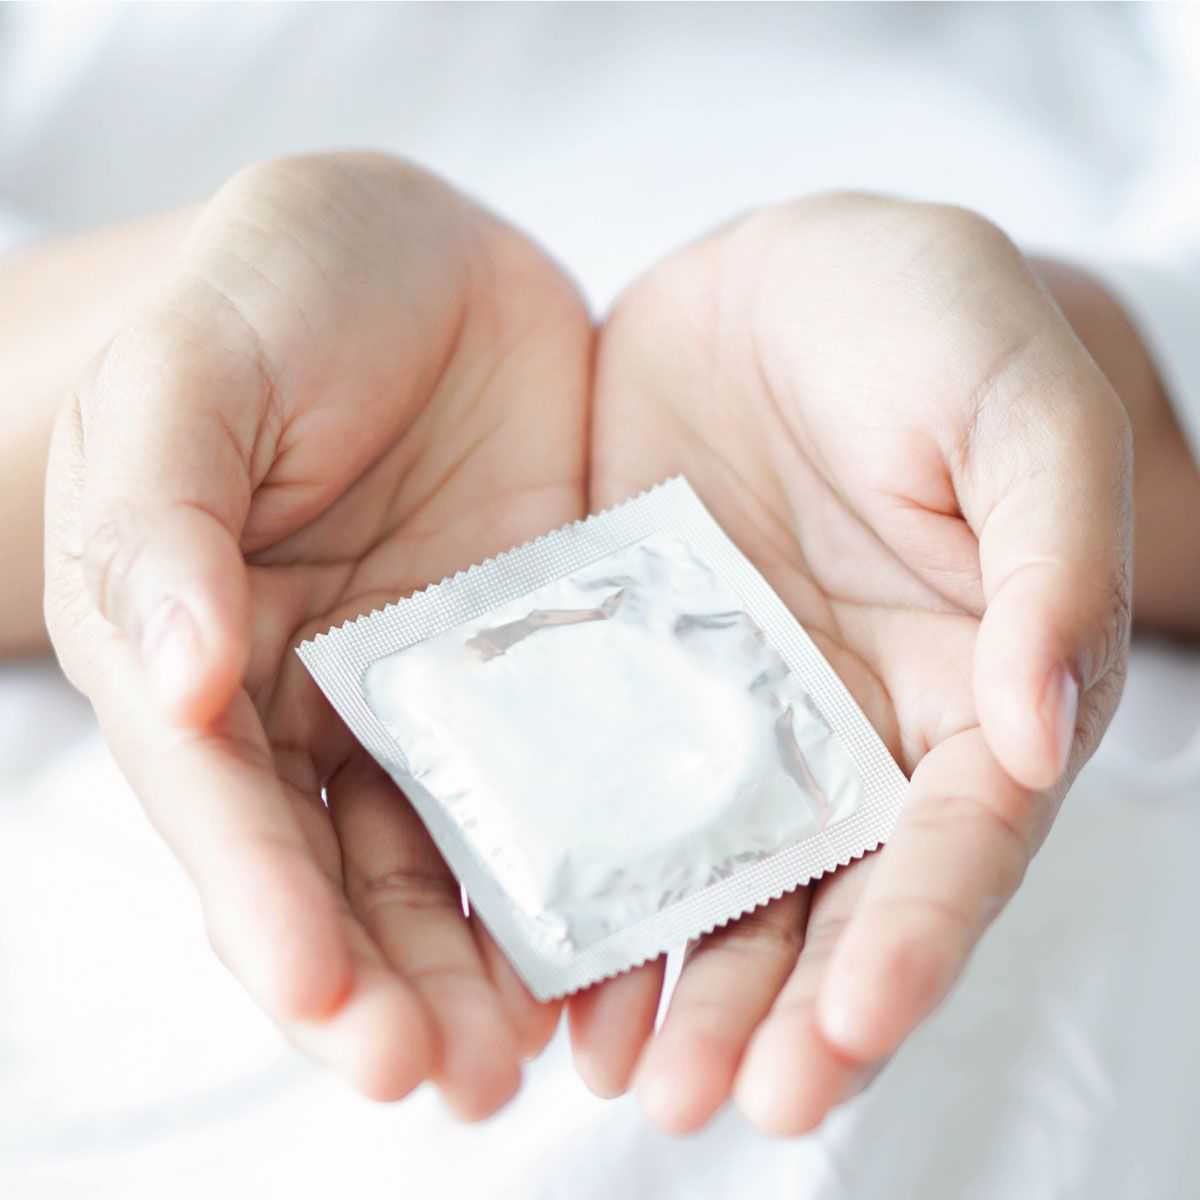 Pharmacie-Lafayette-Blog-Sida-Contraception-Préservatif-min